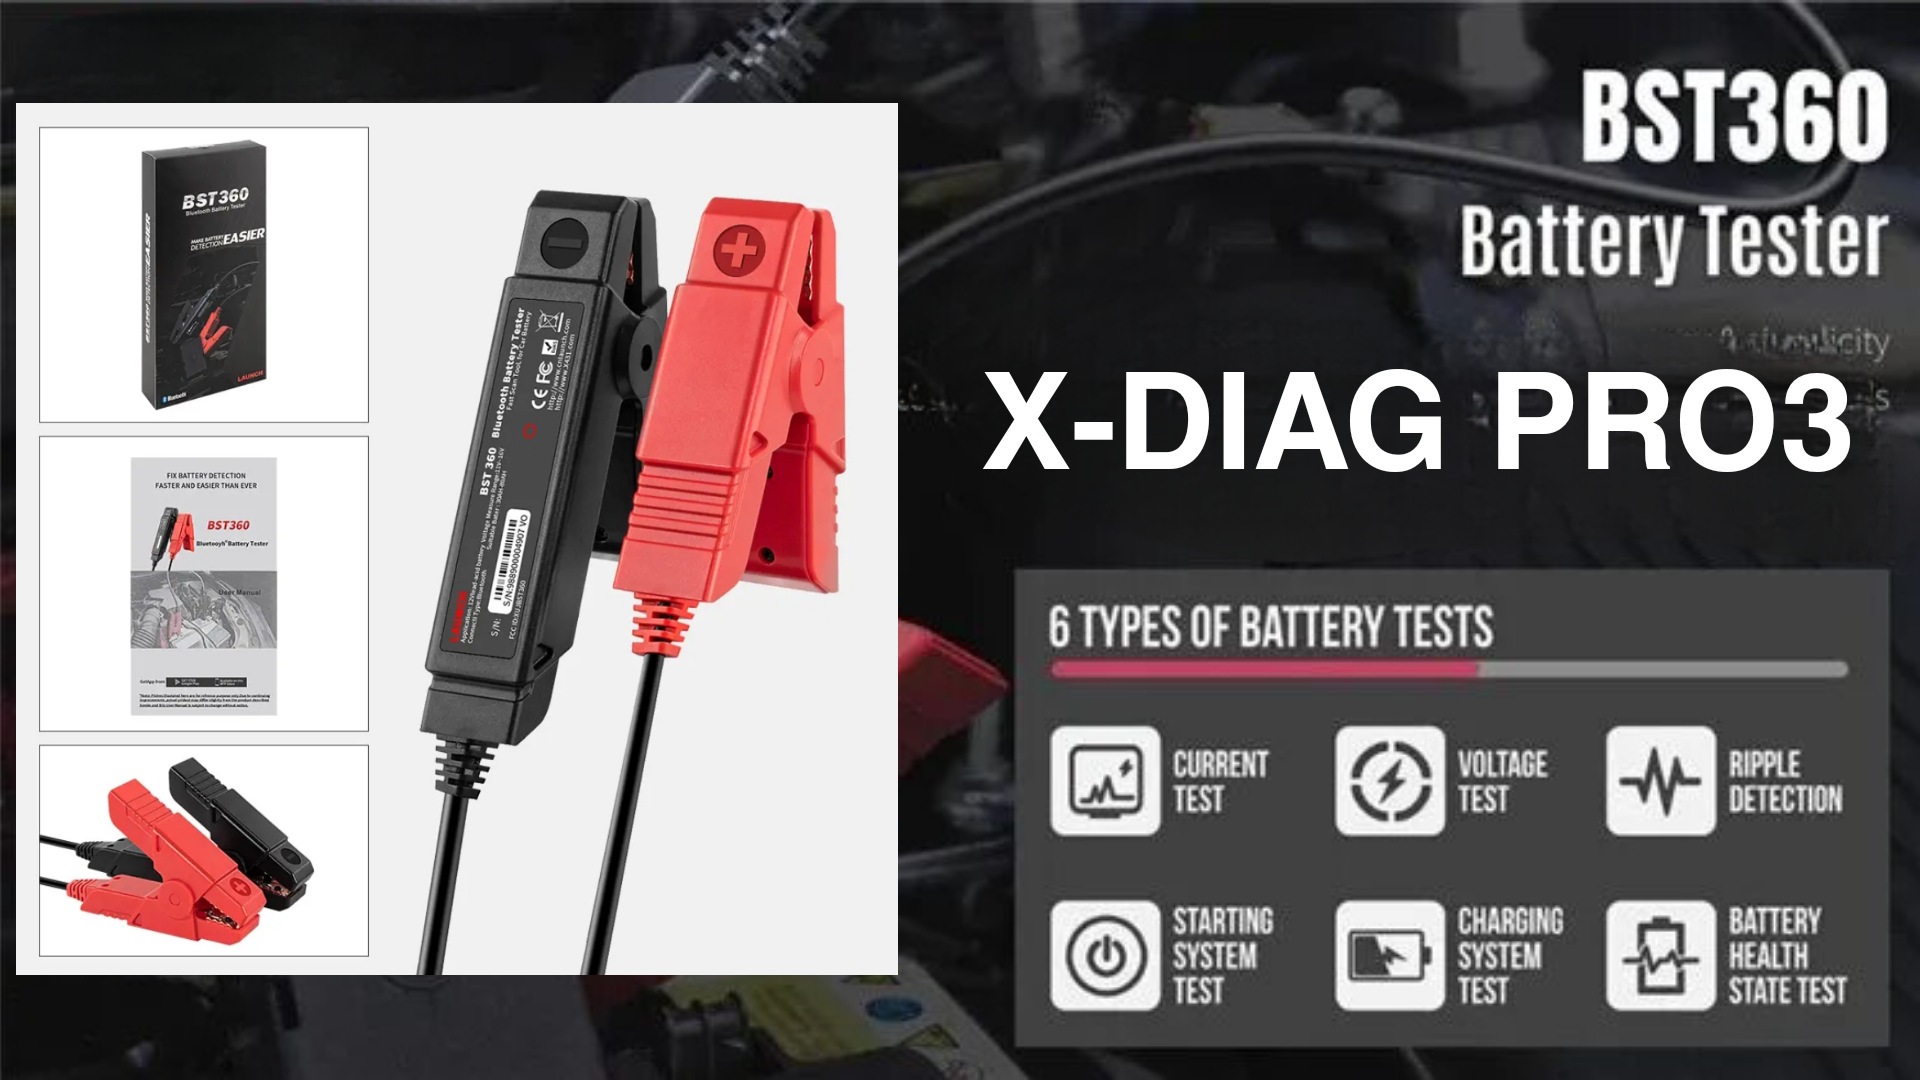 Тестер батареи Launch BST 360 и X-DIAG Pro3